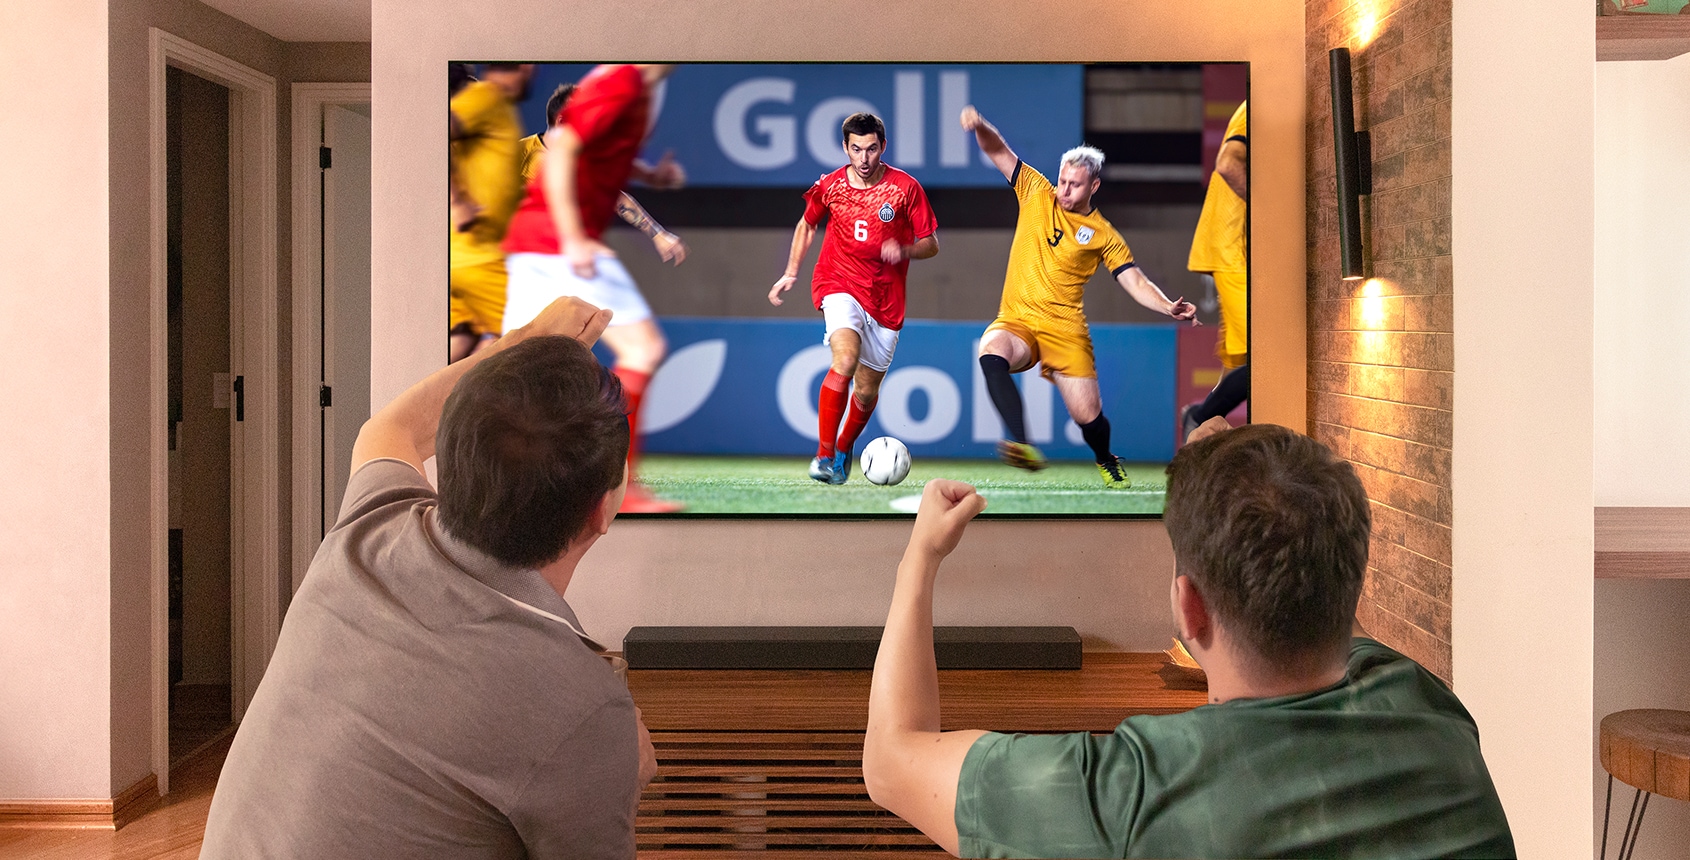 Dos amigos animando con los brazos en alto, puños cerrados hacia el partido de fútbol jugado en el televisor LG OLED en la sala de estar.